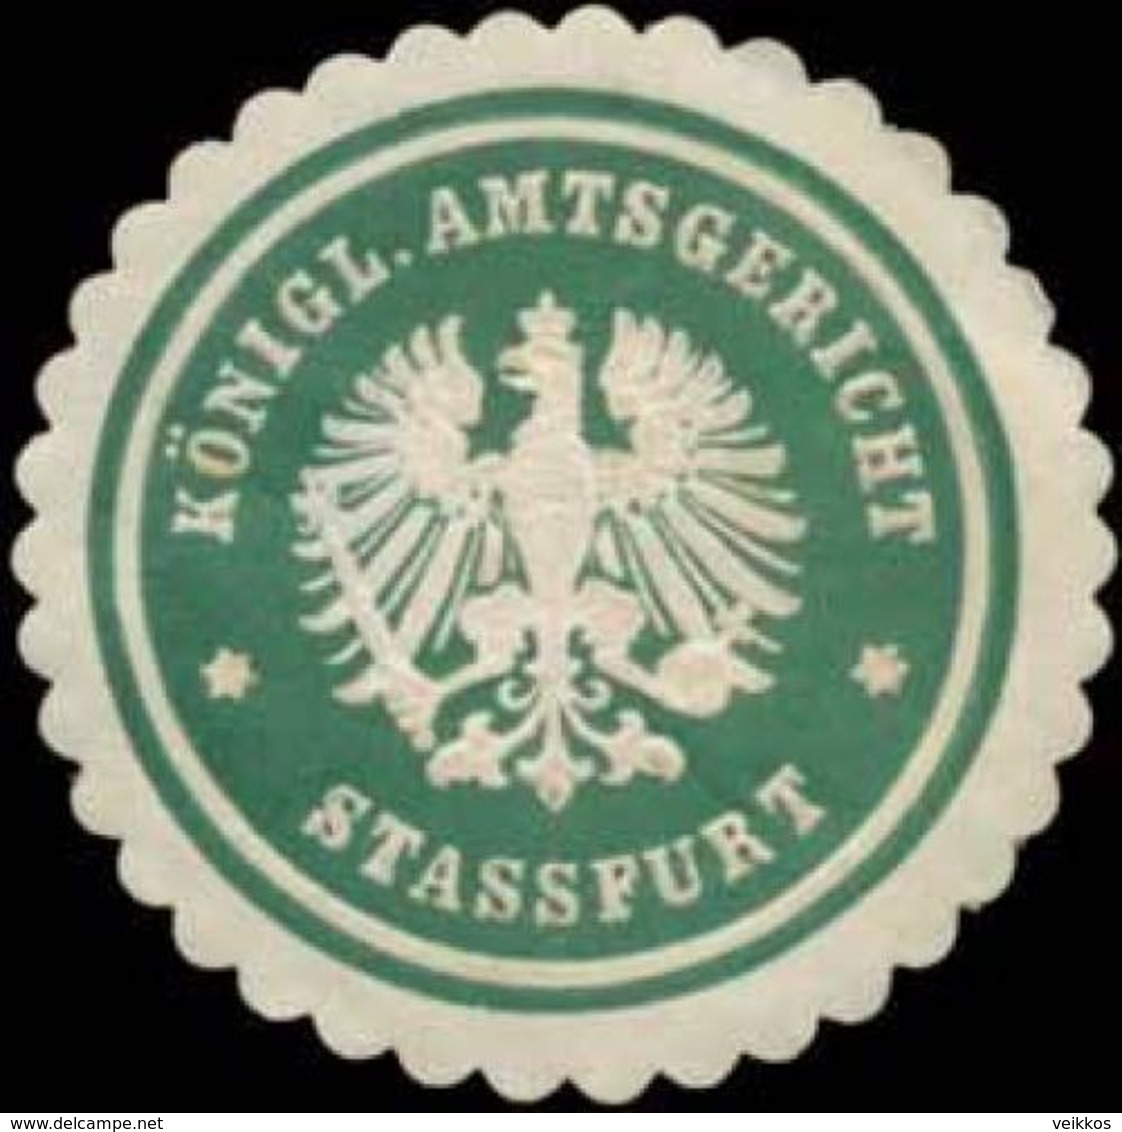 Stassfurt: K. Amtsgericht Stassfurt Siegelmarke - Cinderellas